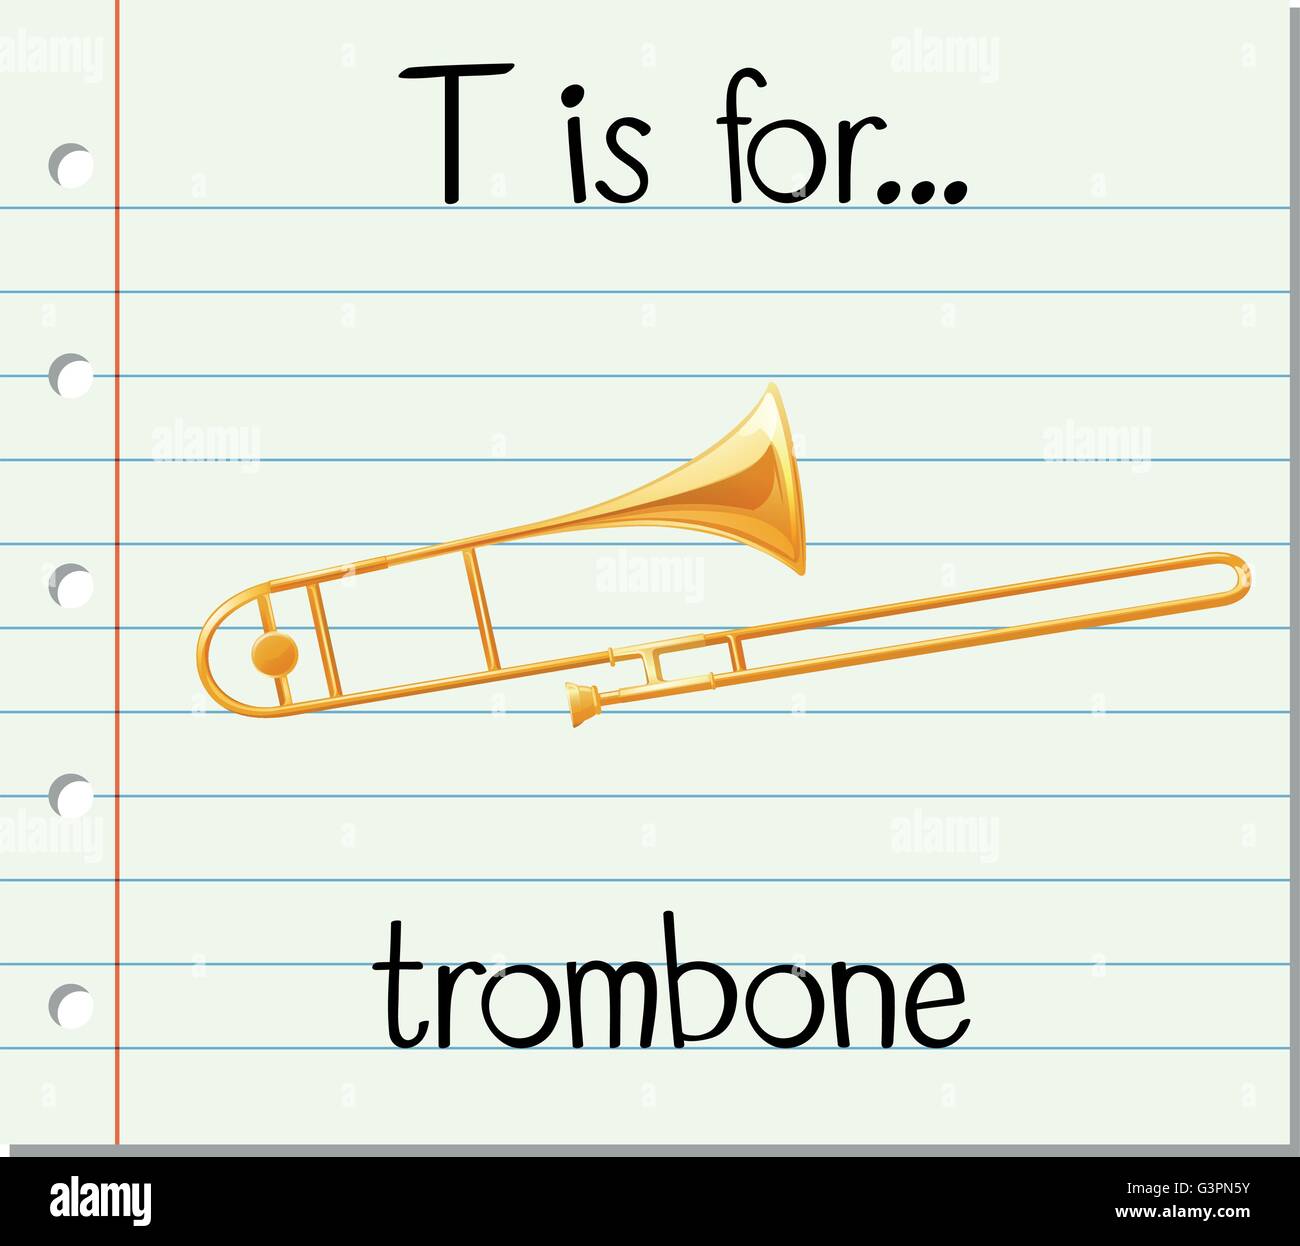 Flashcard letter T is for trombone illustration Stock Vector